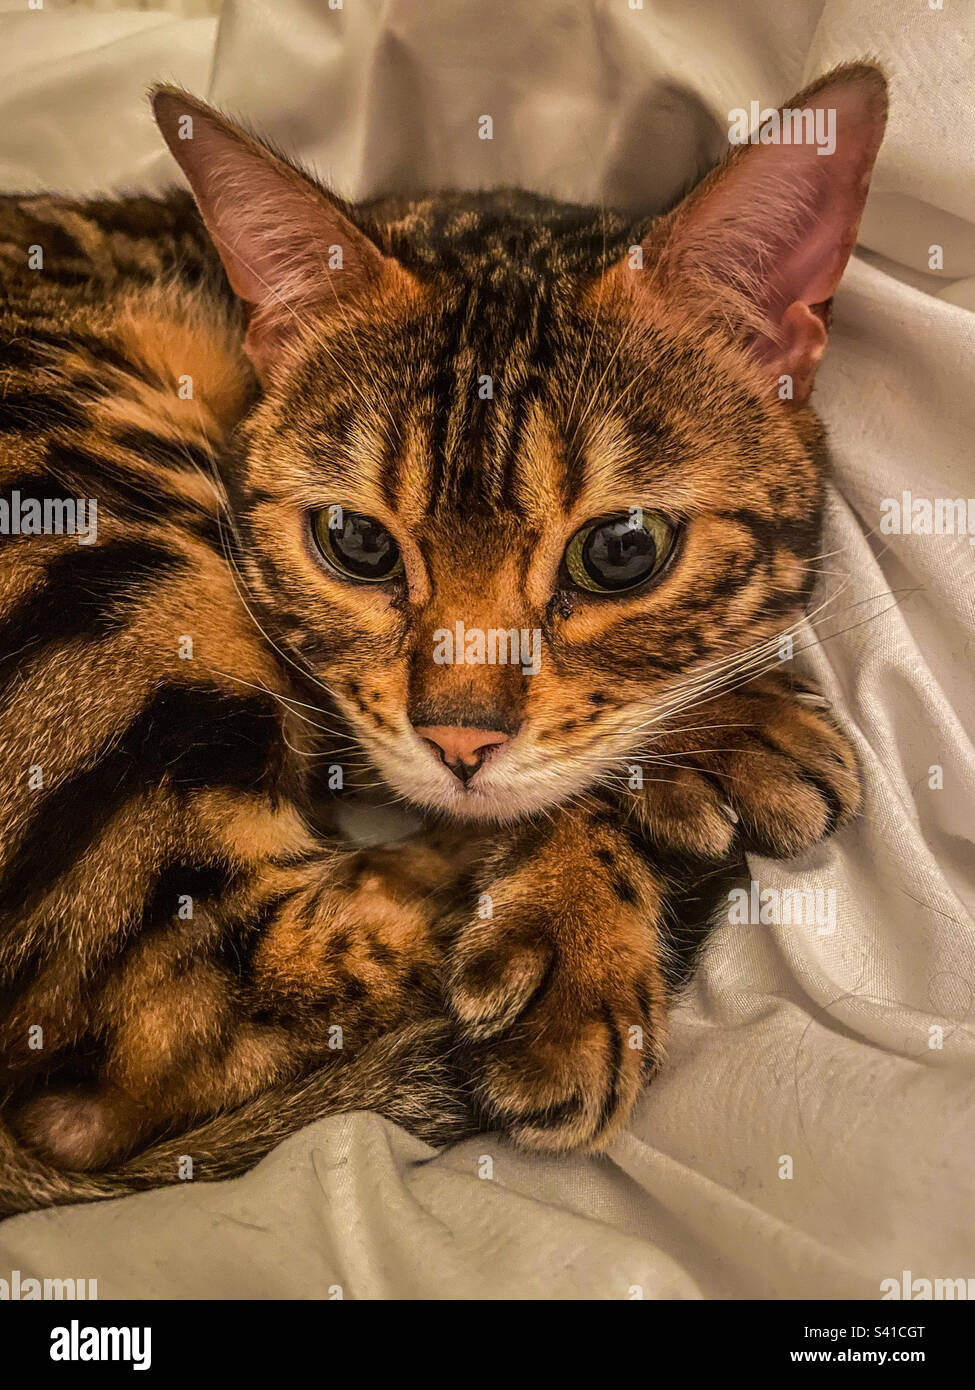 Bengal pet cat Stock Photo